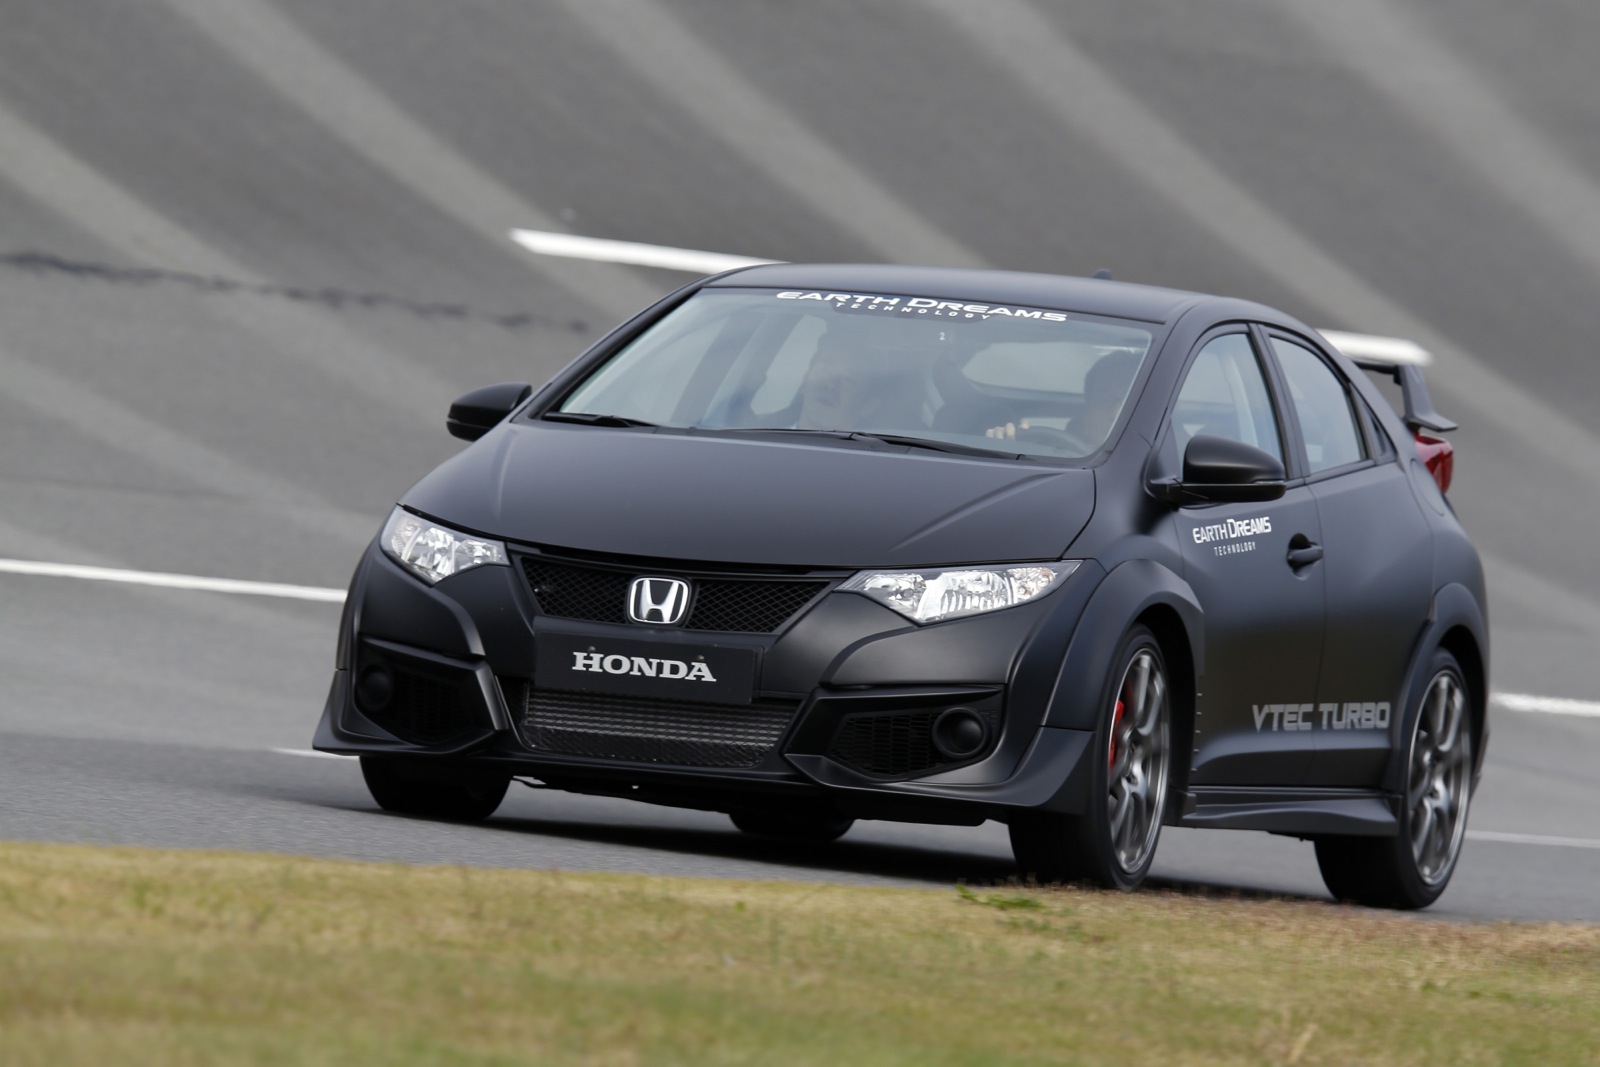 Honda civic type r review #7